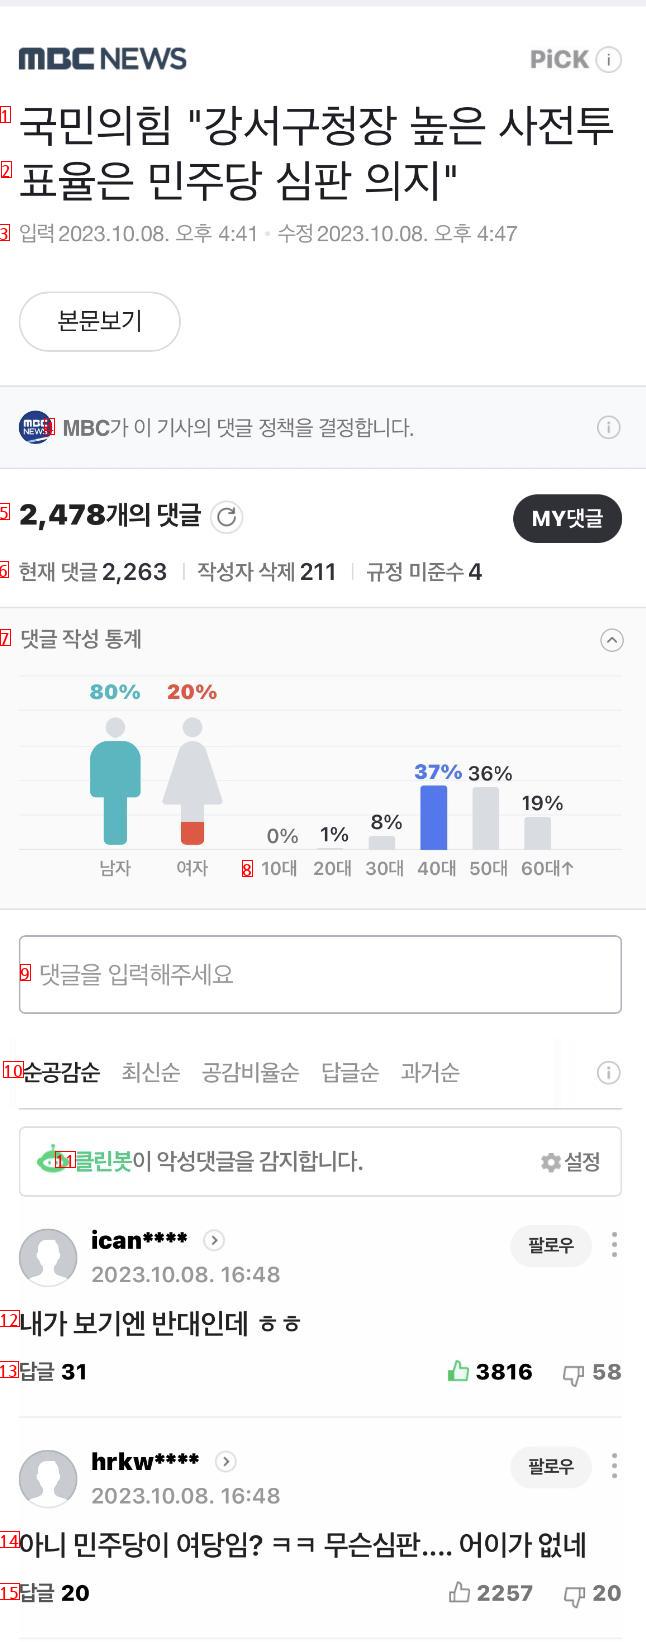 국민의힘 투표율 개소리에 네티즌 반응